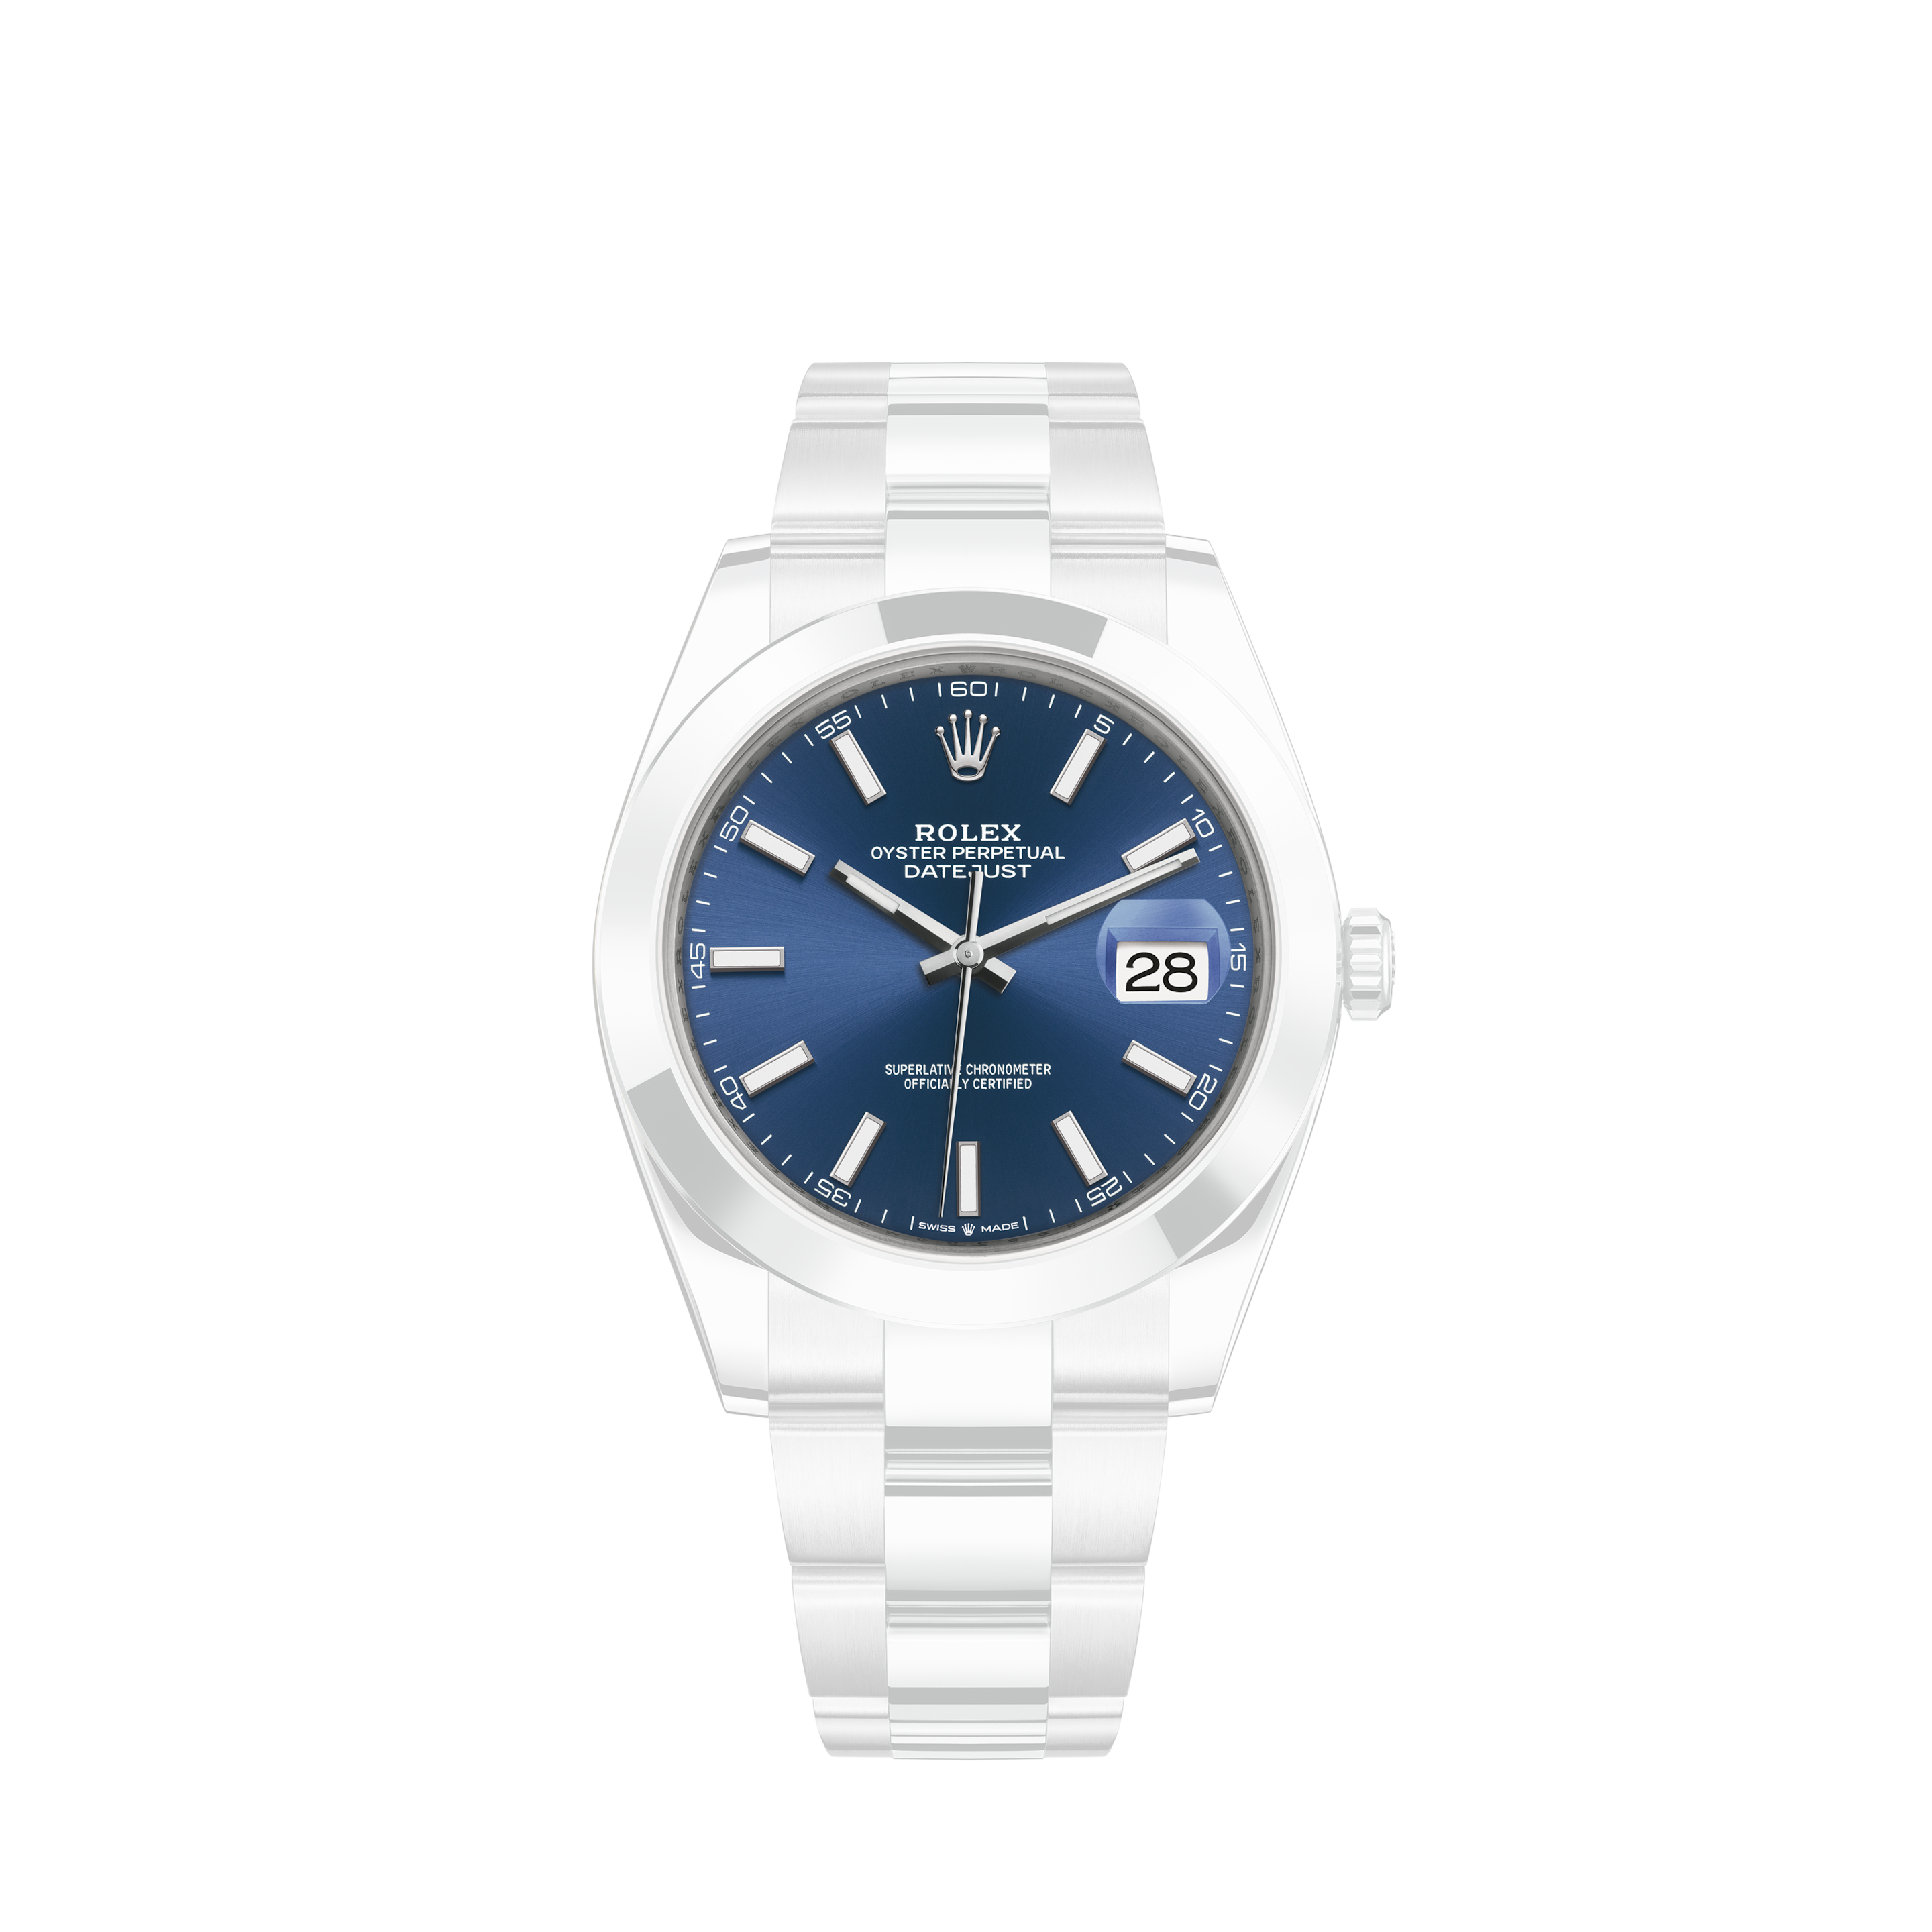 Rolex Rolex Milgauss Watch in Steel Ref: 116400 Circa 2014Rolex Watch Rolex Oyster Perpetual Date in steel Ref: 1501 Around 1967